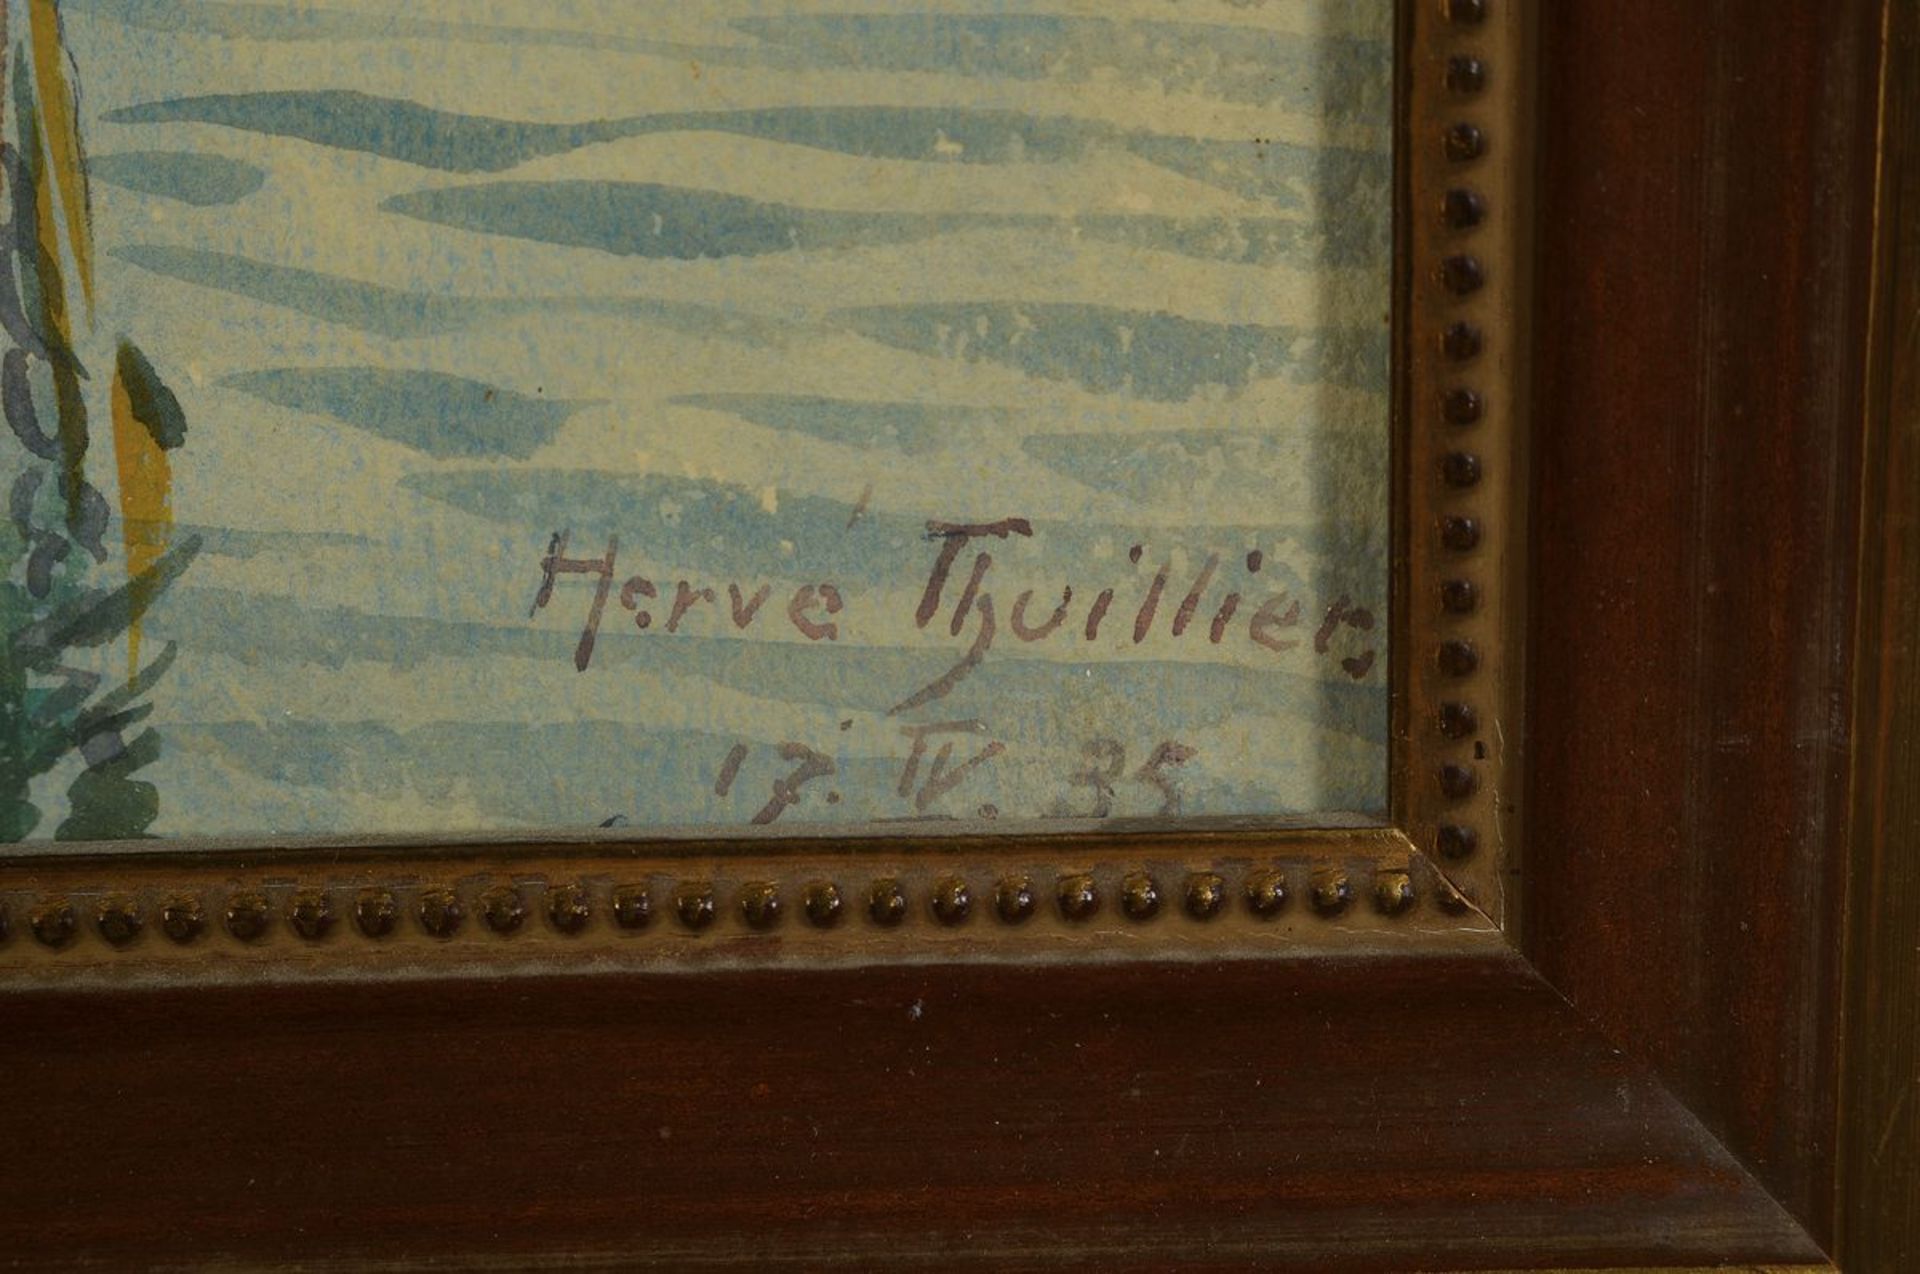 Herve Thuillier, datiert 1935, Cote d'azur, St. Maxim, Aquarell auf Papier, rechts unten signiert, - Bild 2 aus 3